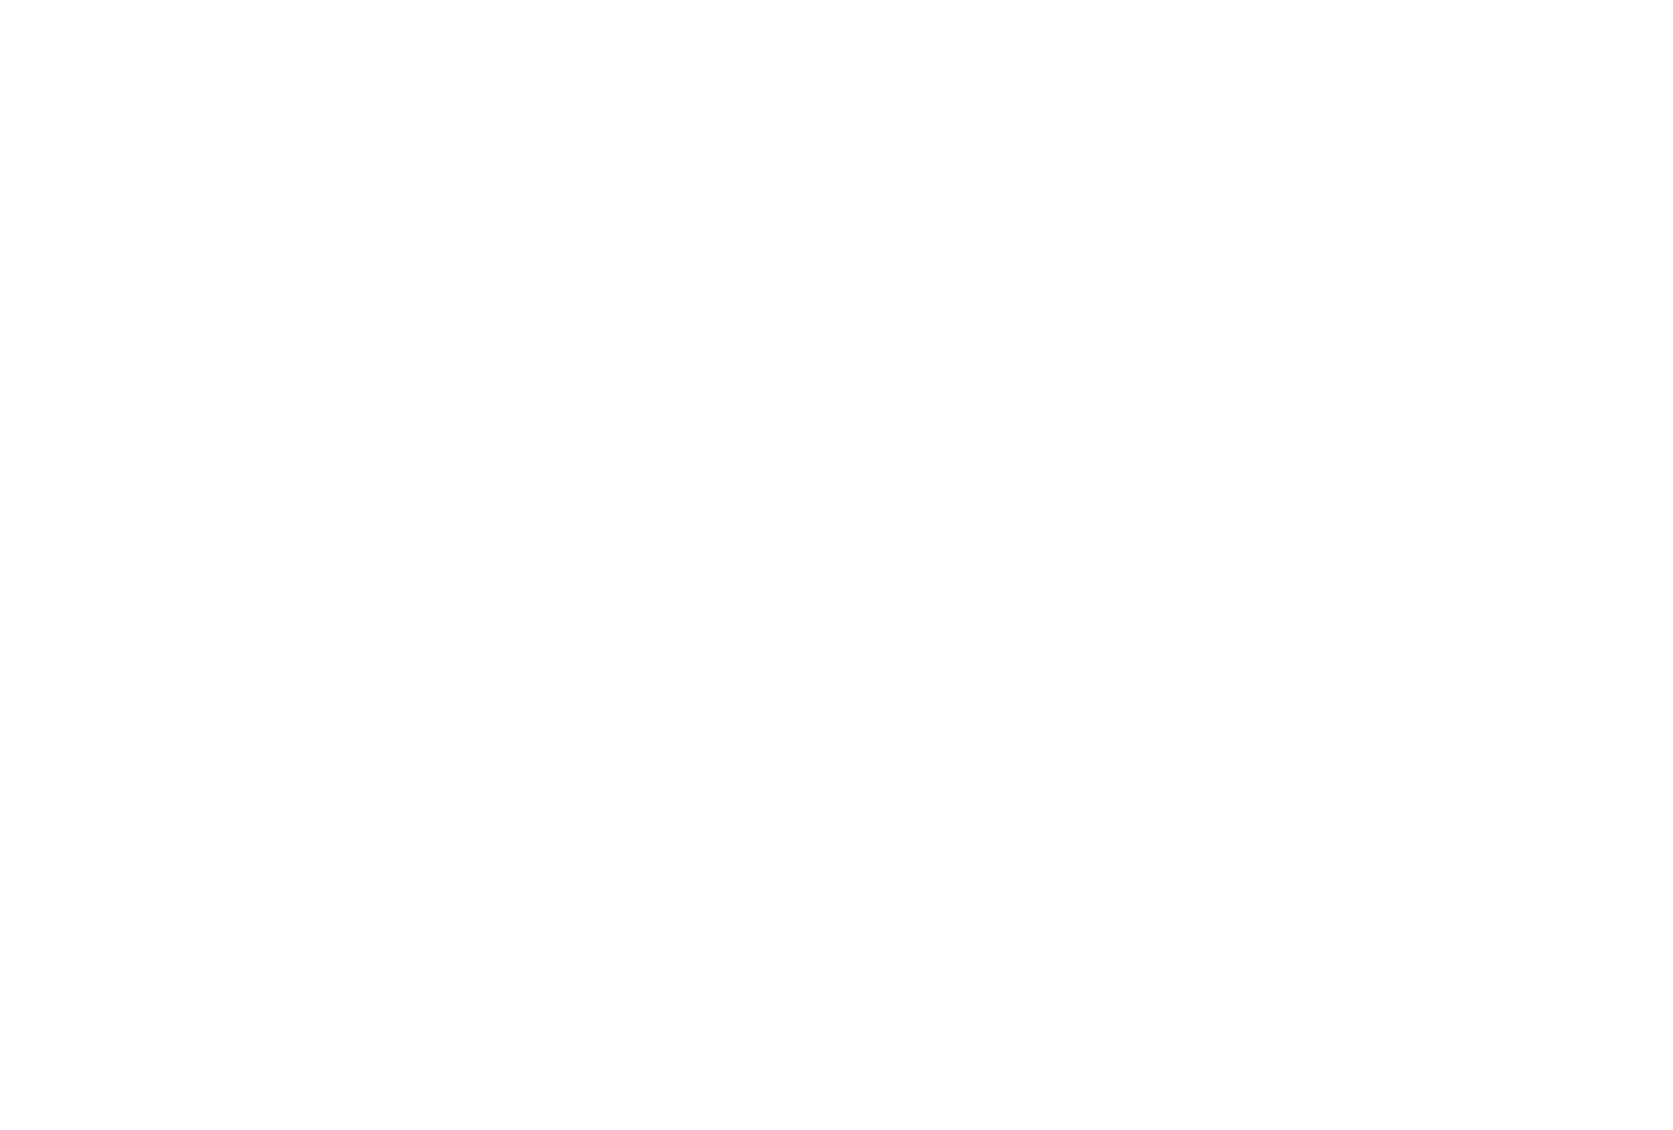 Mirage Residence